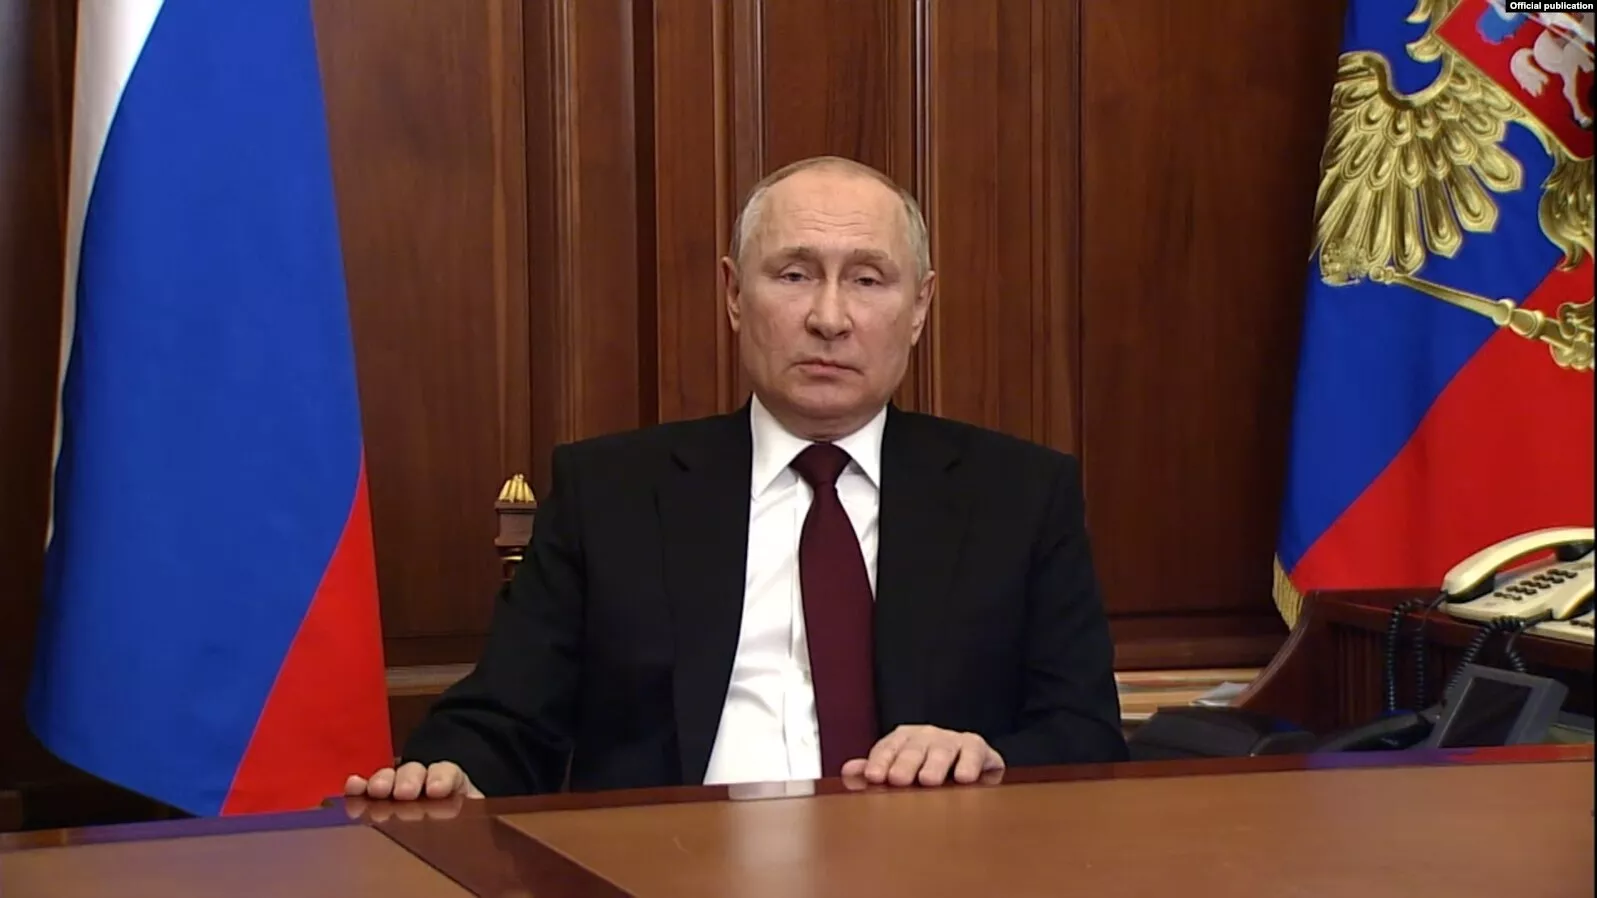 Володимир Путін: "Мною ухвалено рішення про проведення спеціальної військової операції"